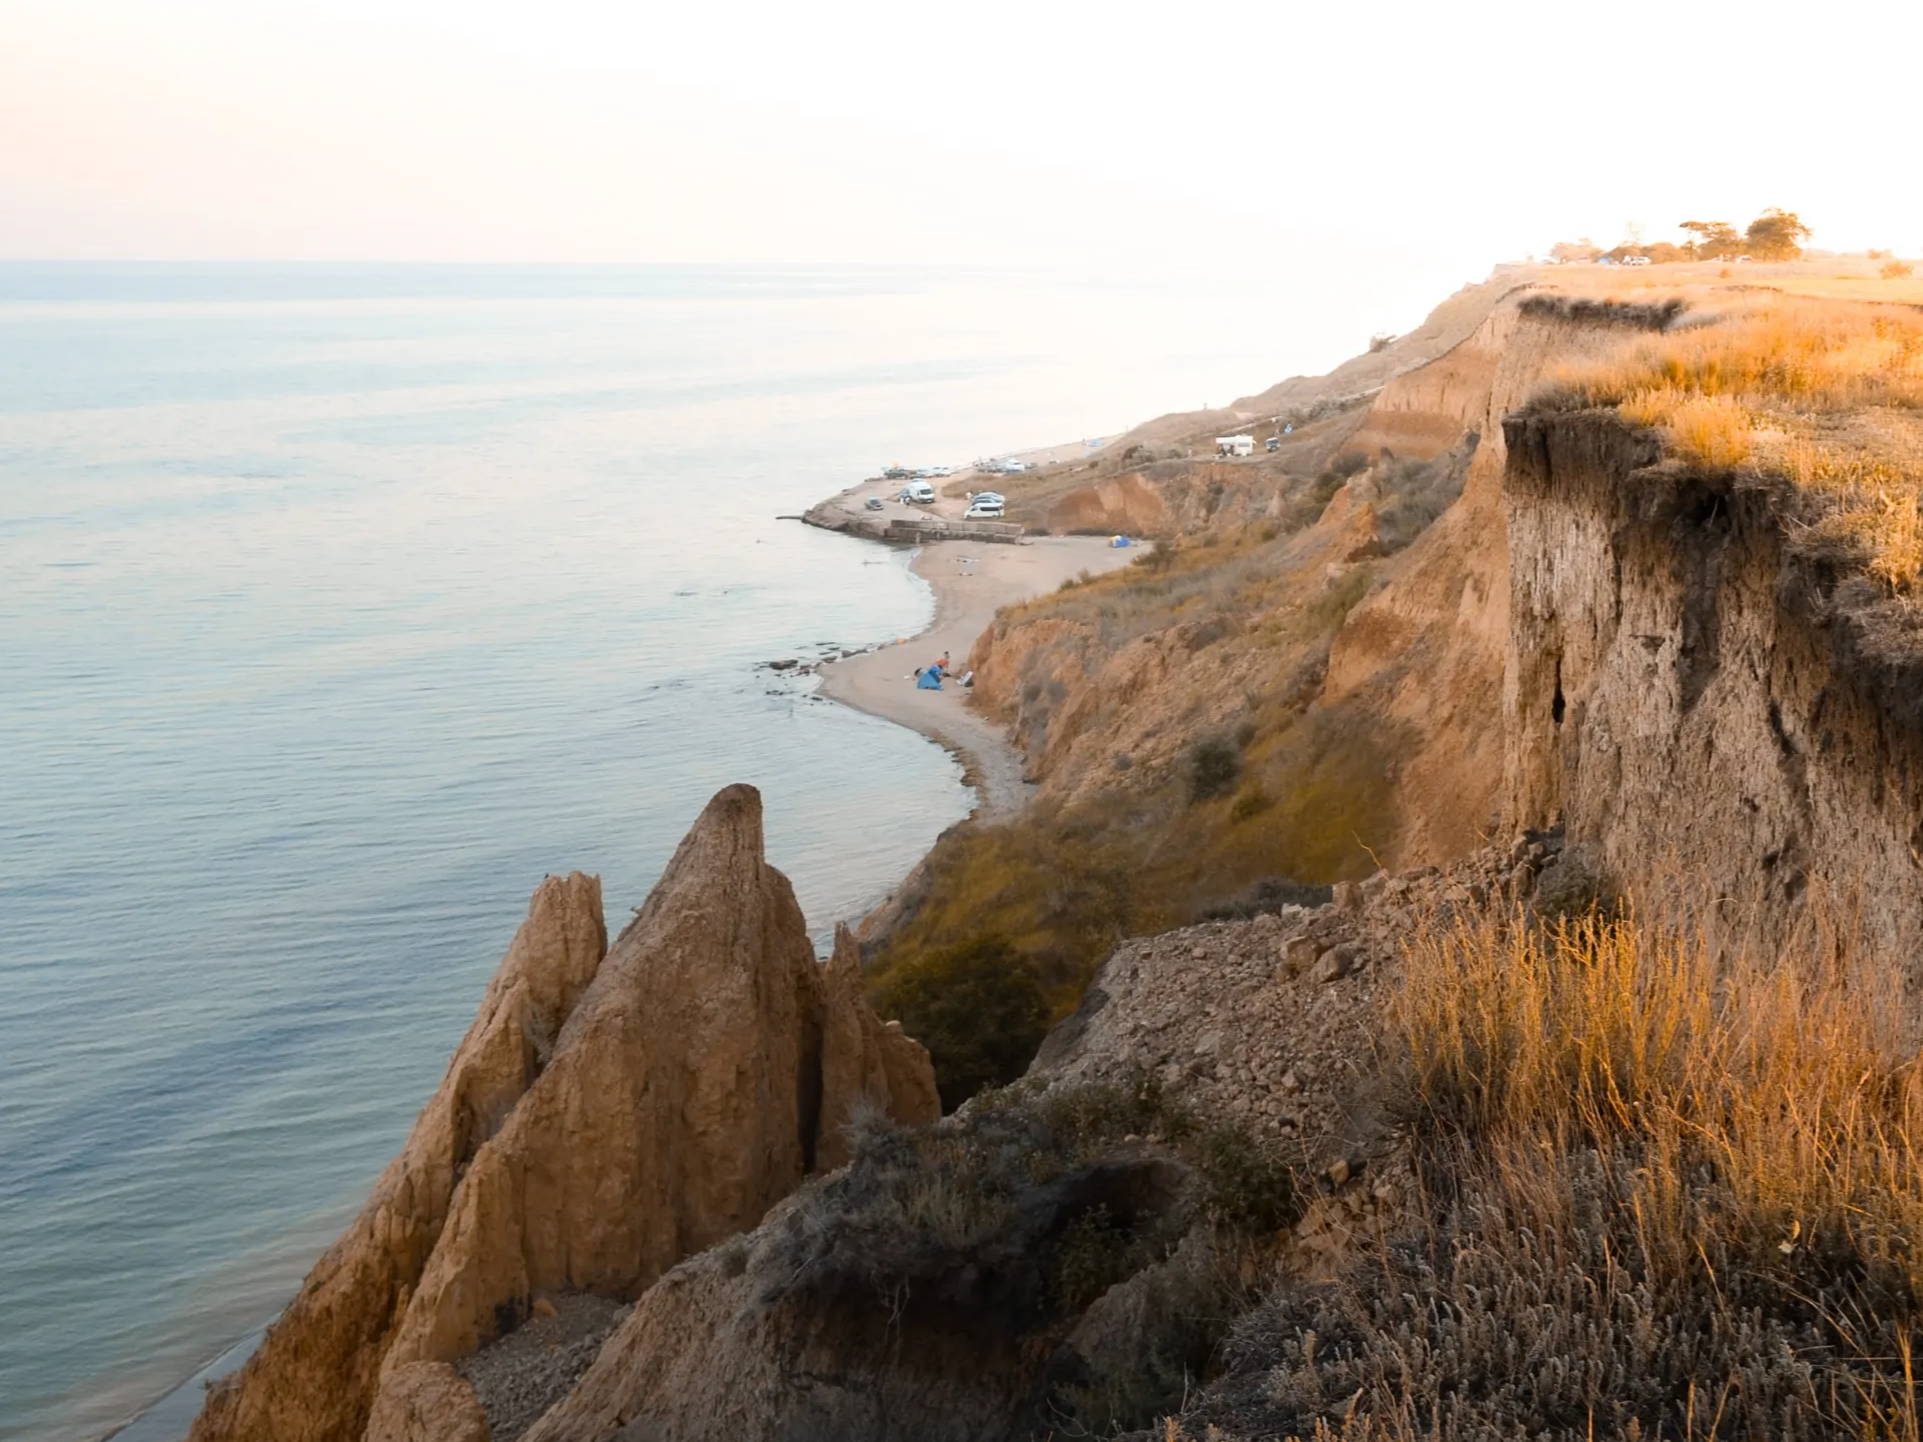 Rocky cliffs overlooking the ocean